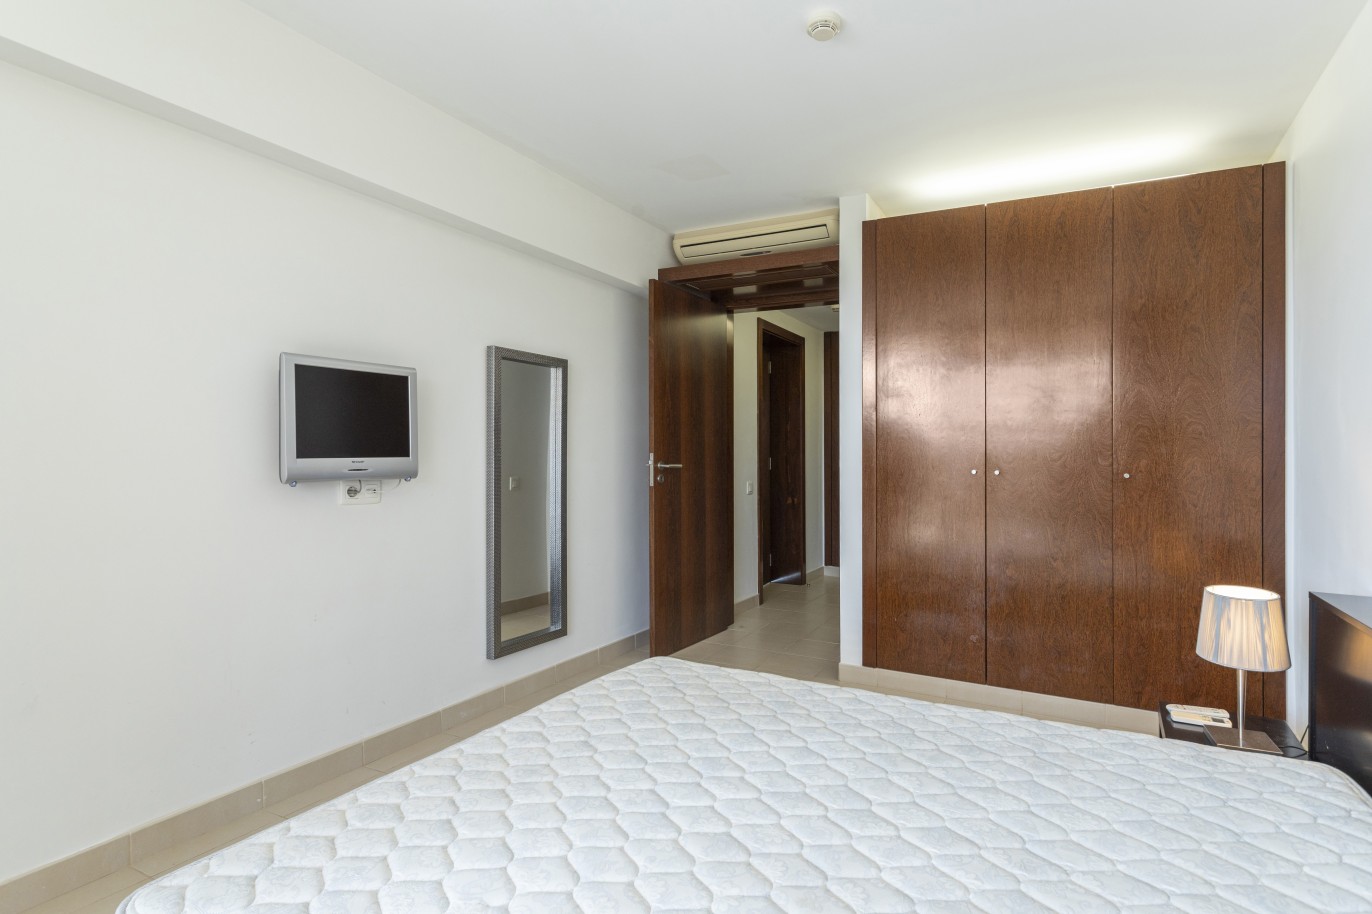 1 bedroom apartment in luxury condominium, for sale in Salgados, Algarve_228197